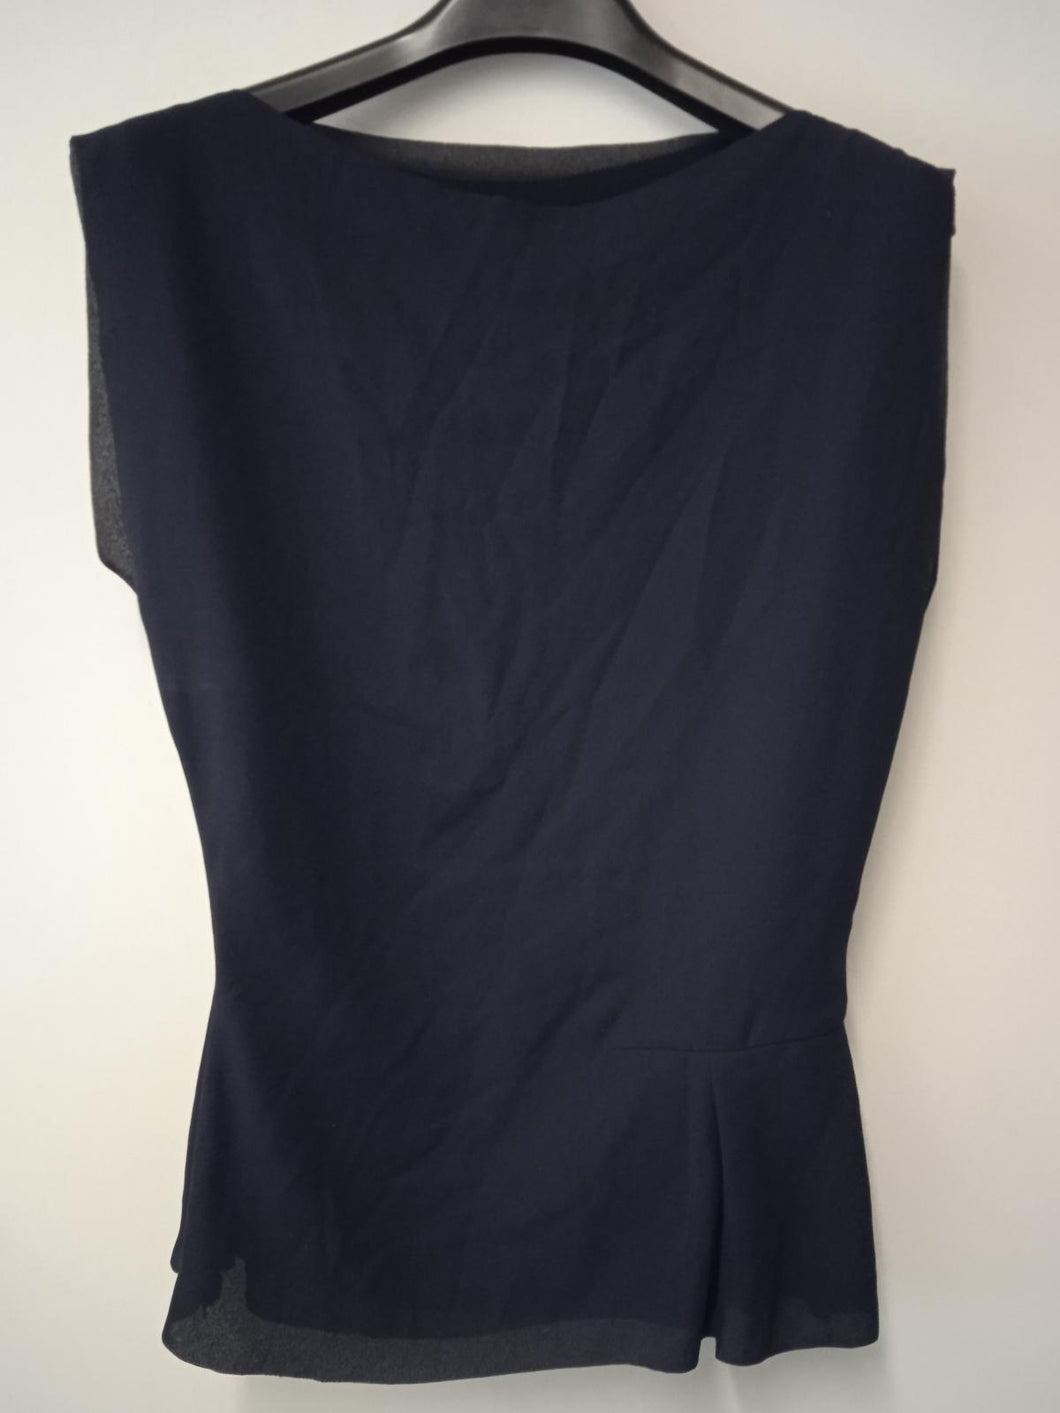 REISS Ladies Navy Blue Asymmetric Sleeveless Kia Drape Top Size UK10 NEW